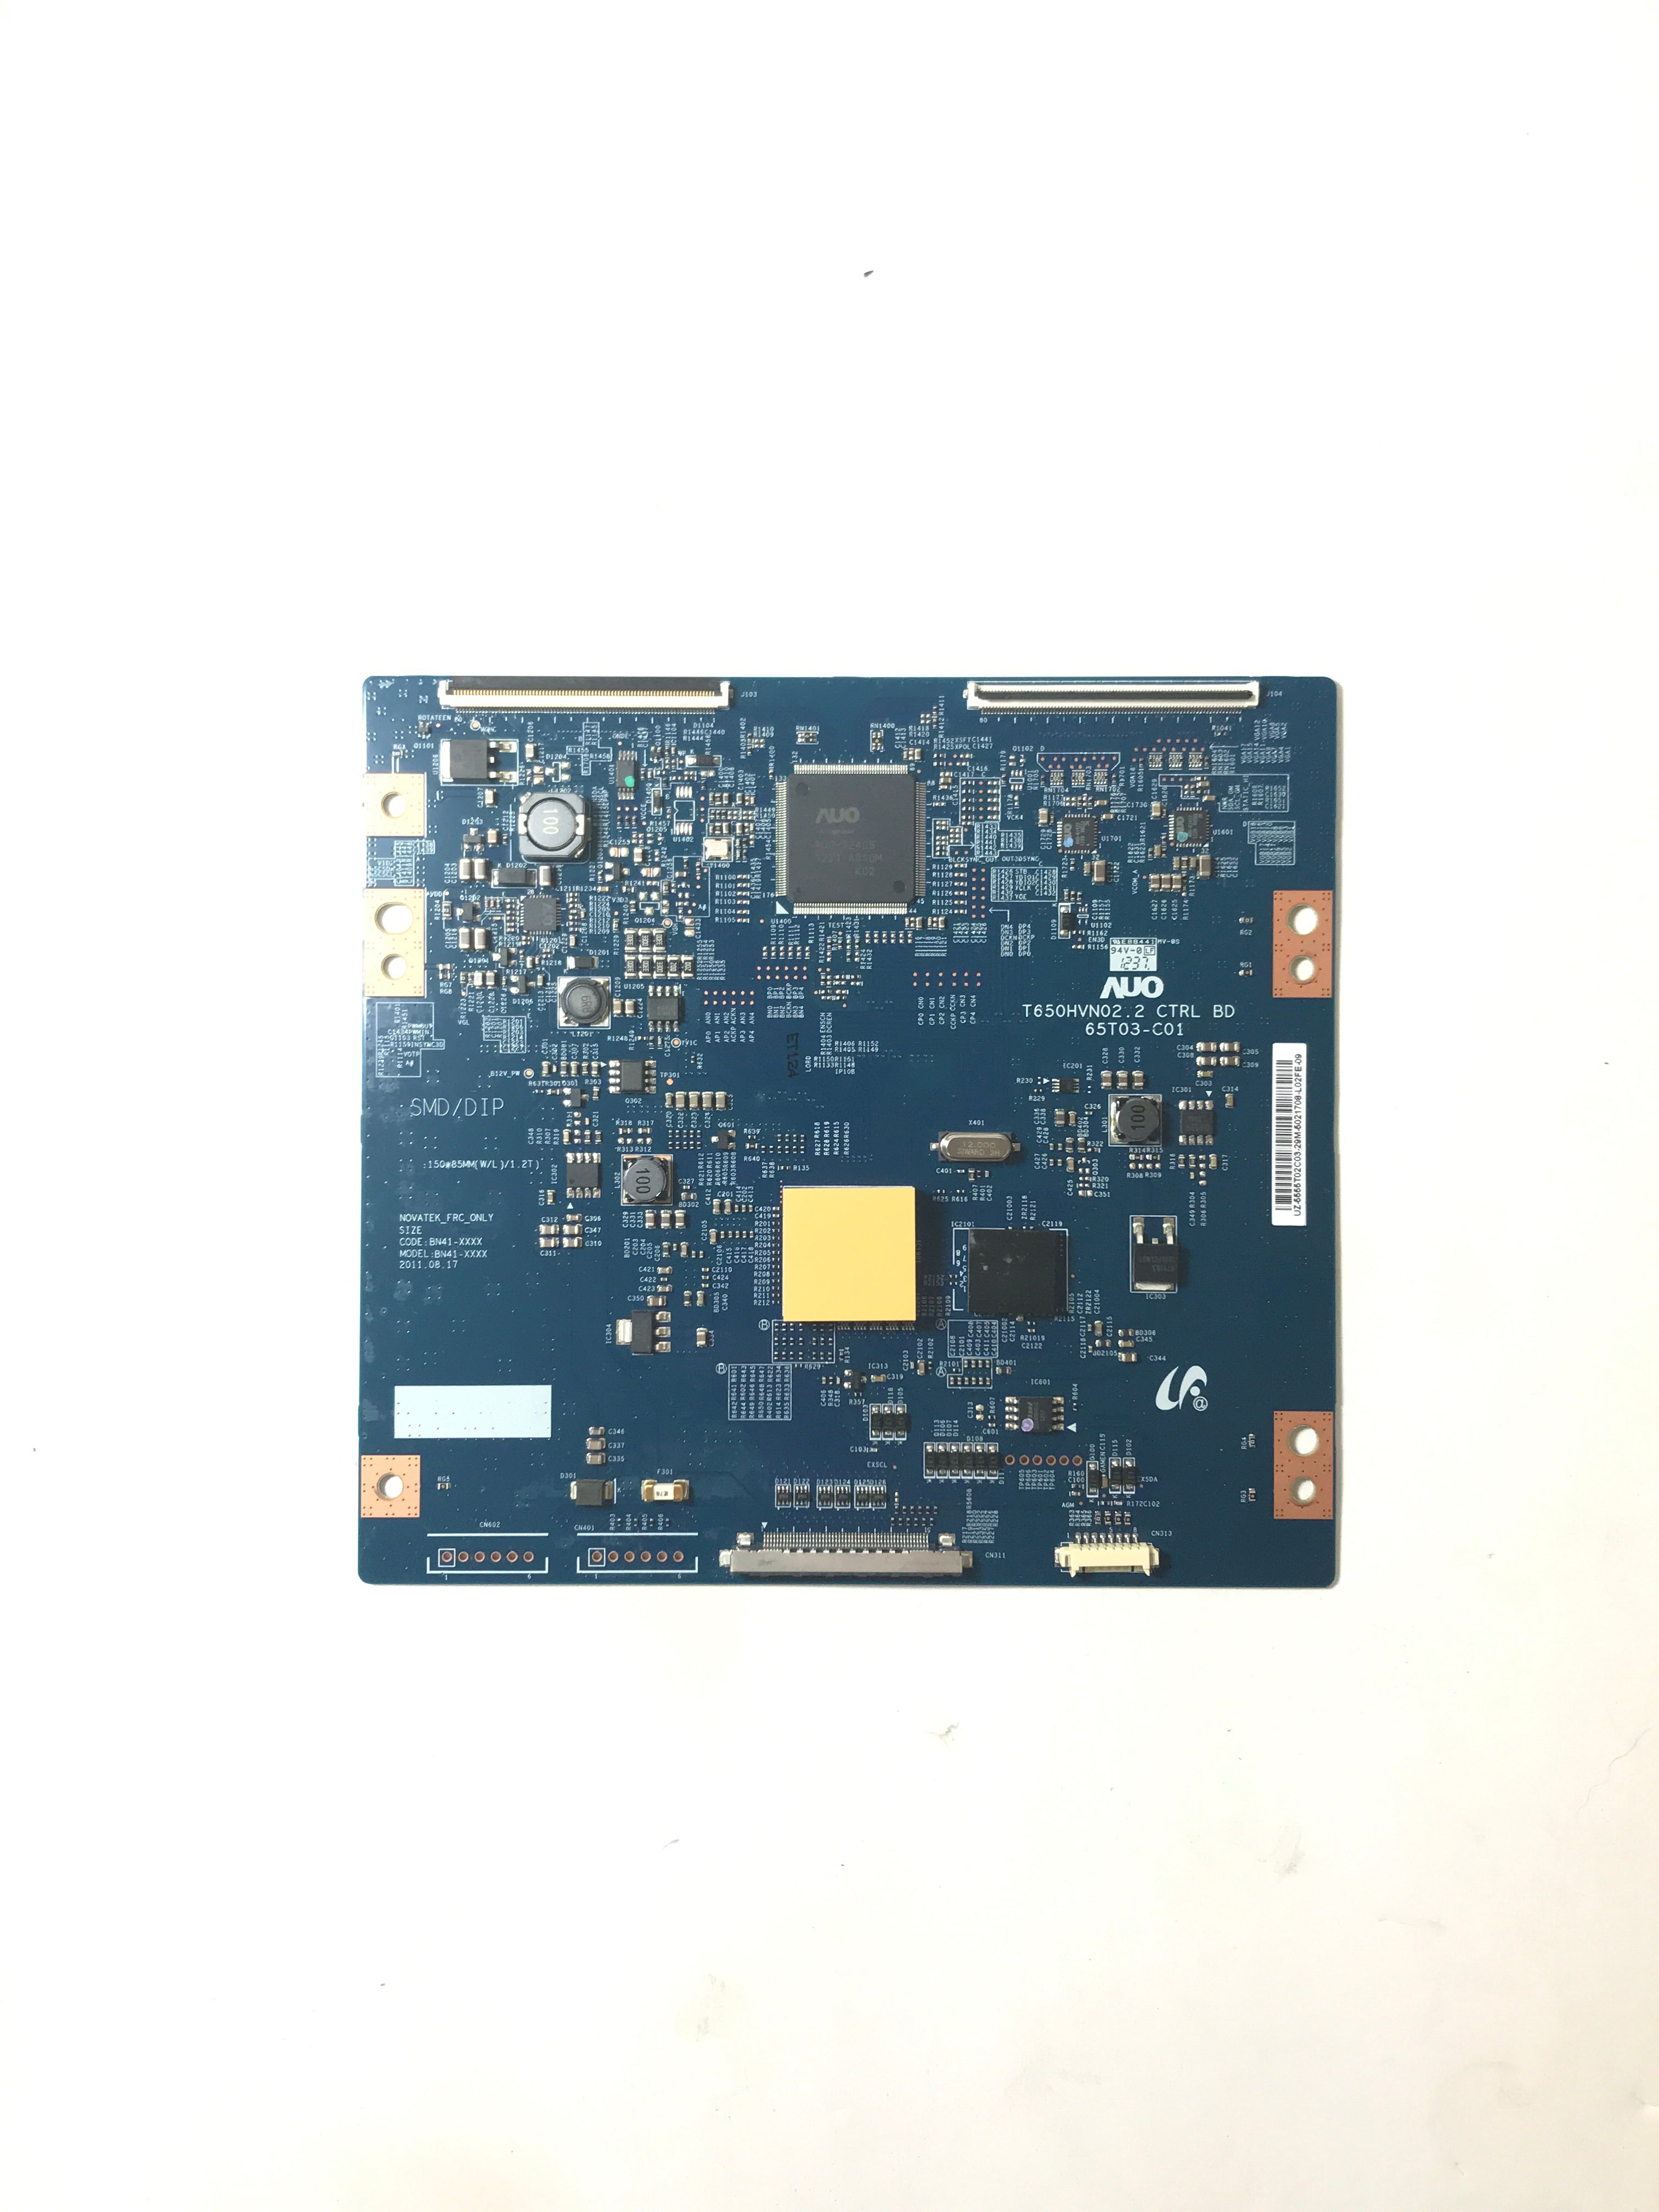 Samsung 55.55T02.C03 (T650HVN02.2, 65T03-C01) T-Con Board